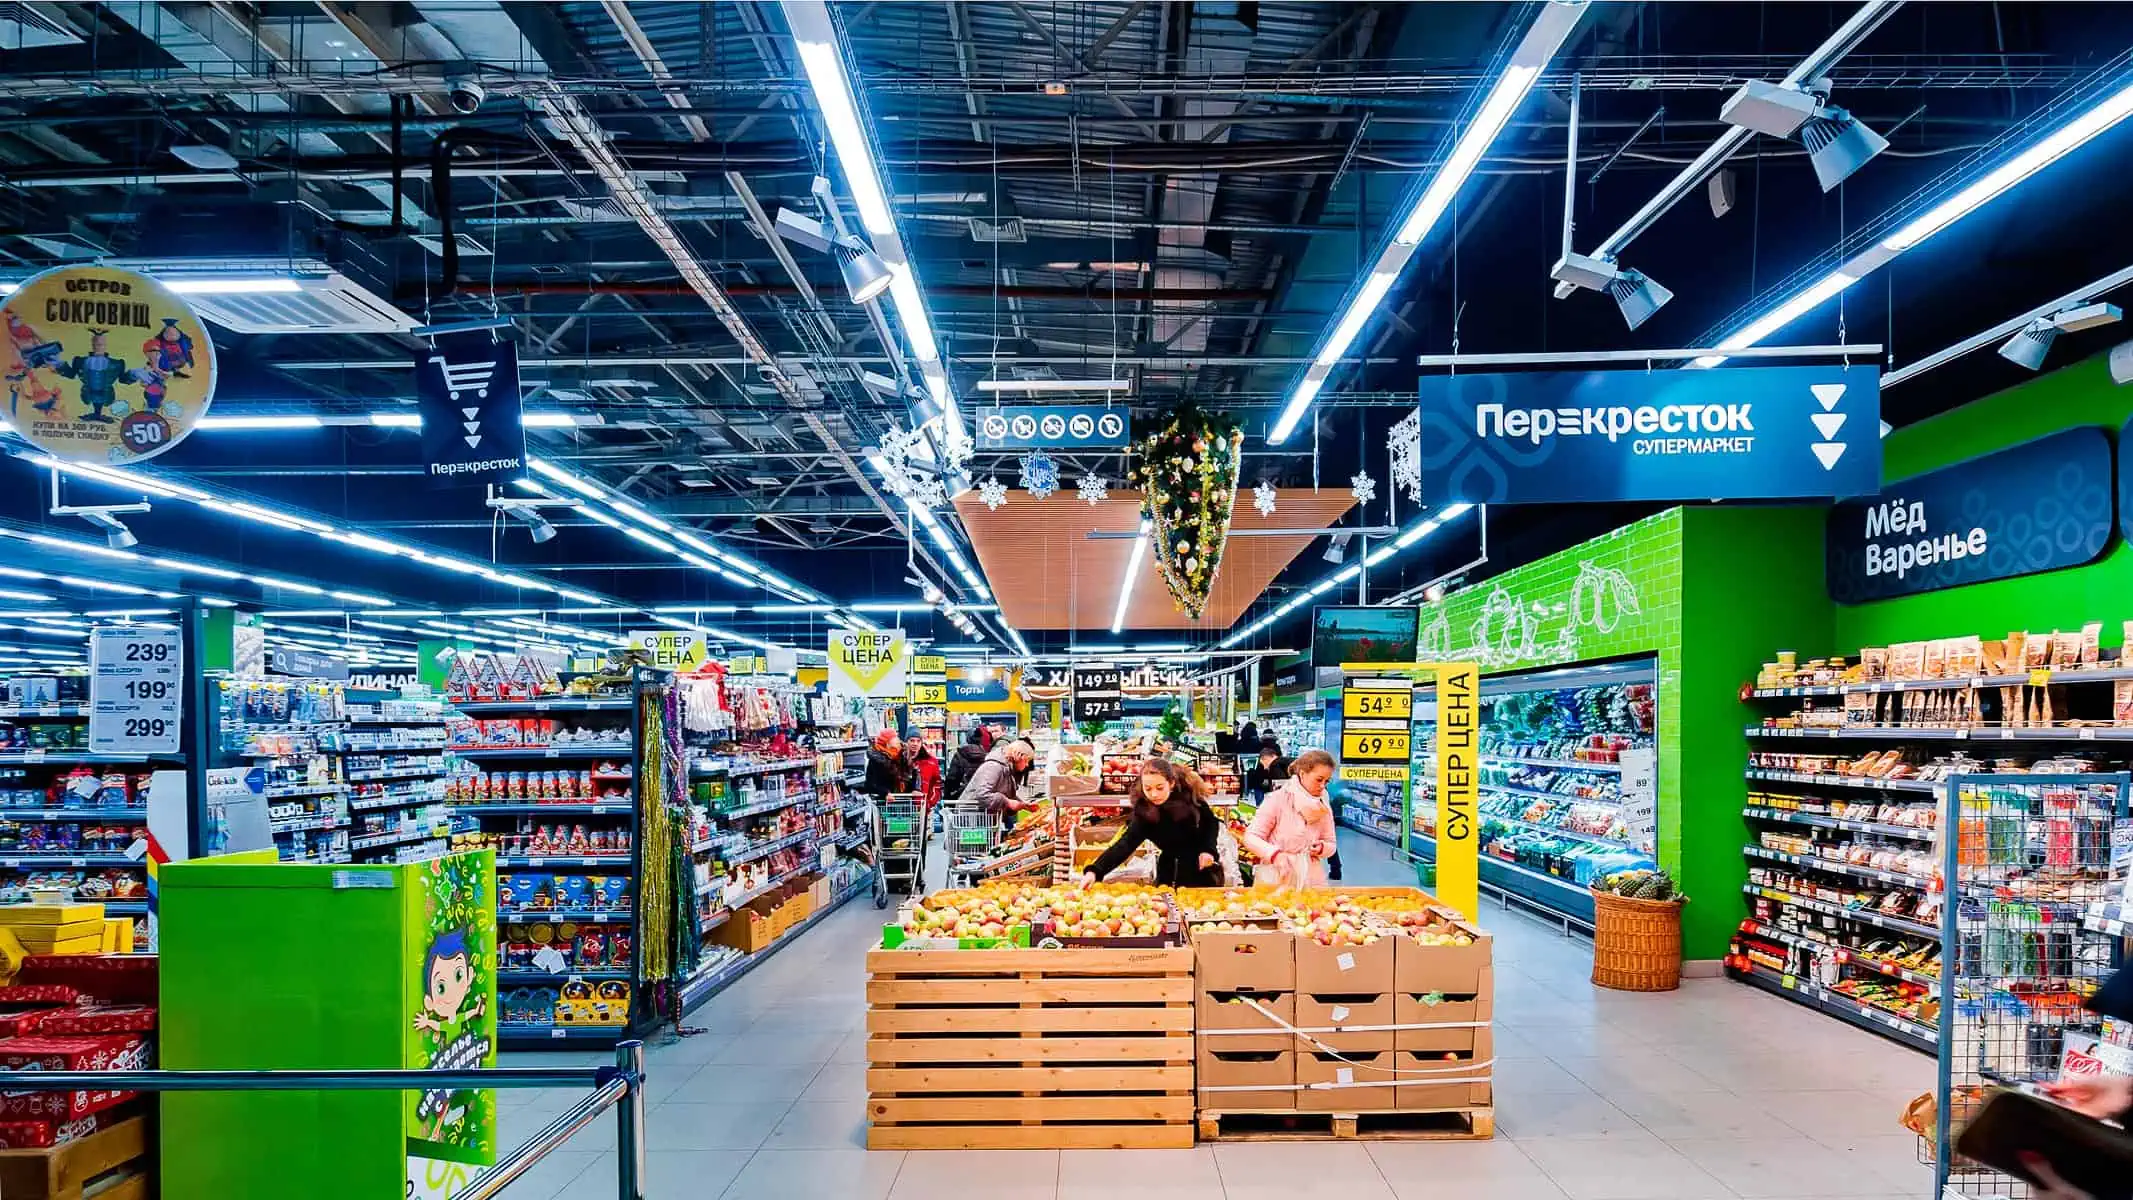 Estrategias de Marketing que Usan los Supermercados Sin que te Des Cuenta